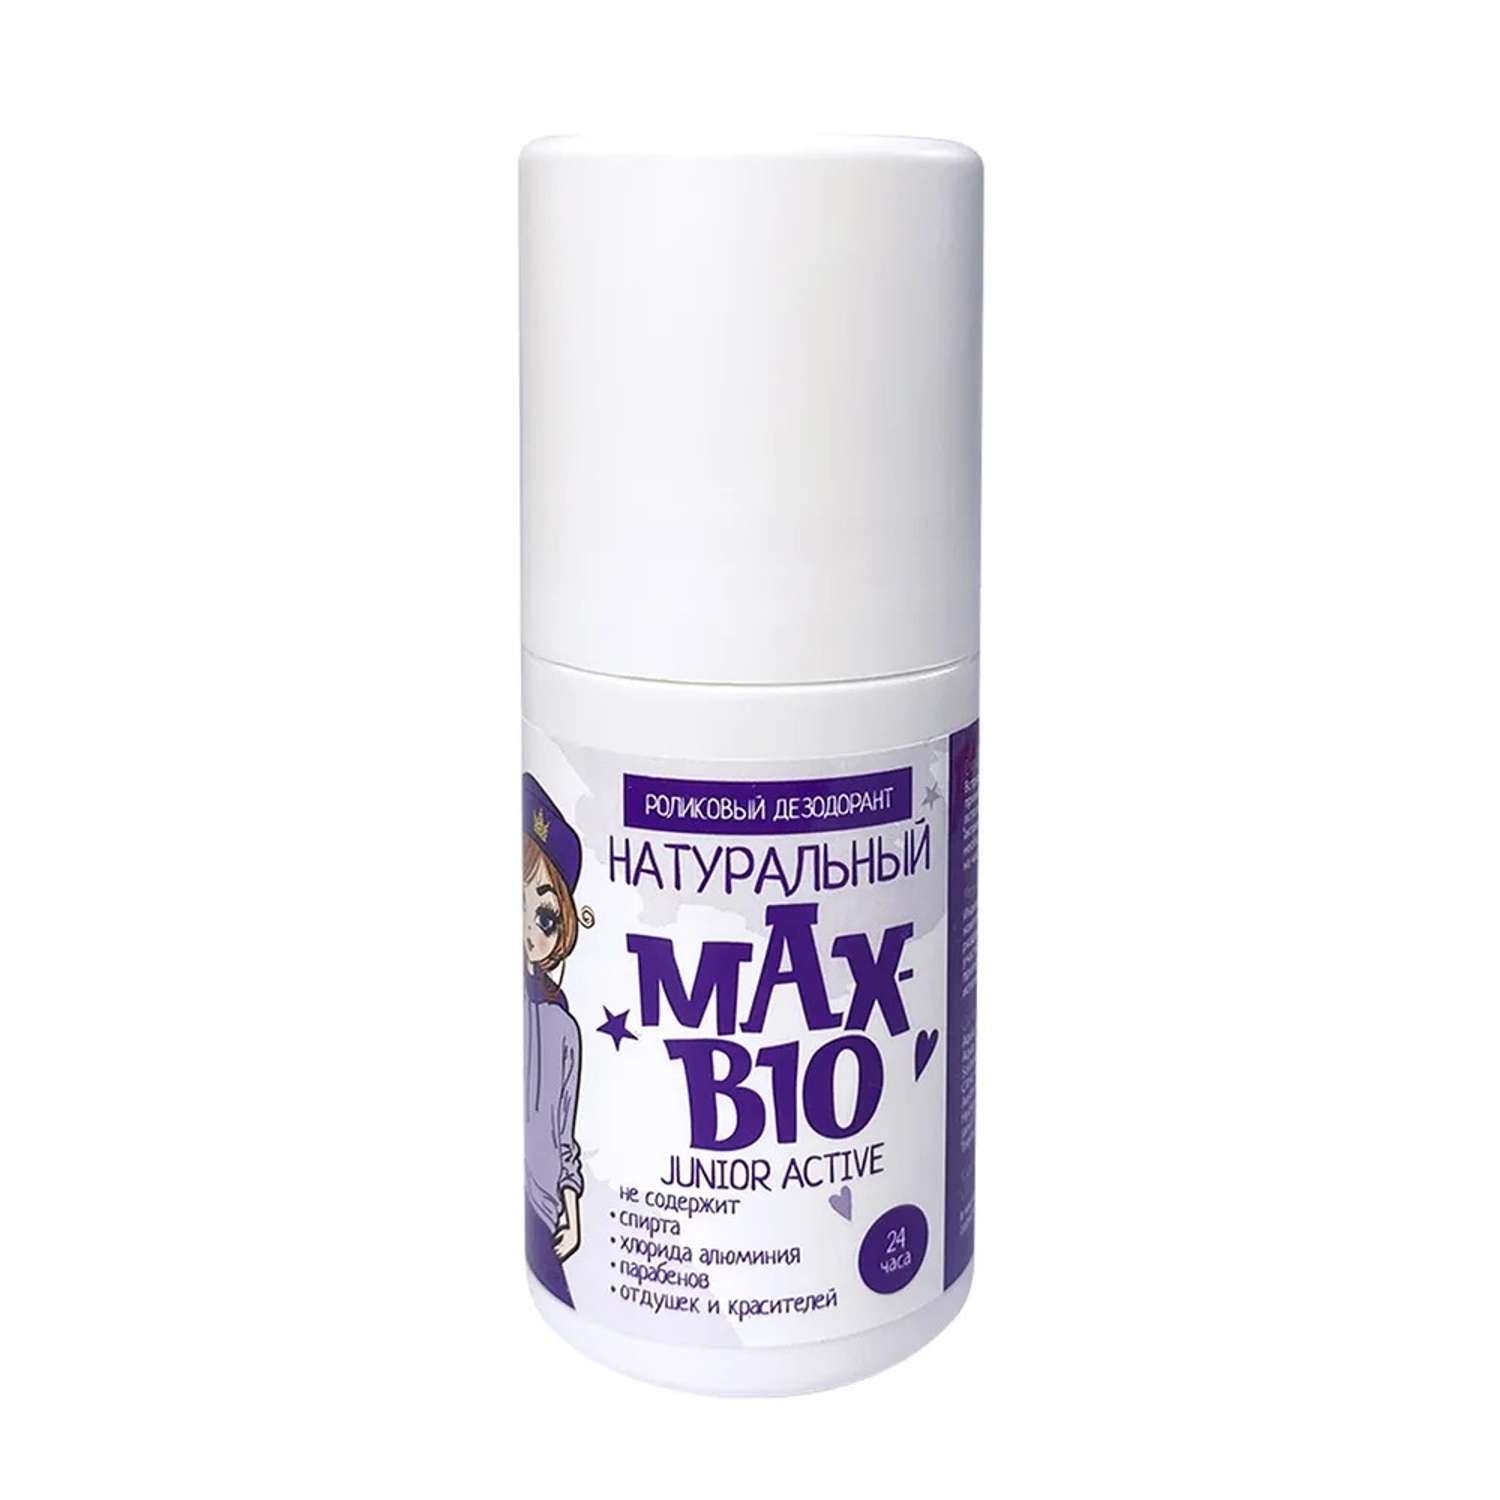 Натуральный дезодорант Max-F Deodrive Натуральный подростковый дезодорант MAX-BIO JUNIOR ACTIVE - фото 2